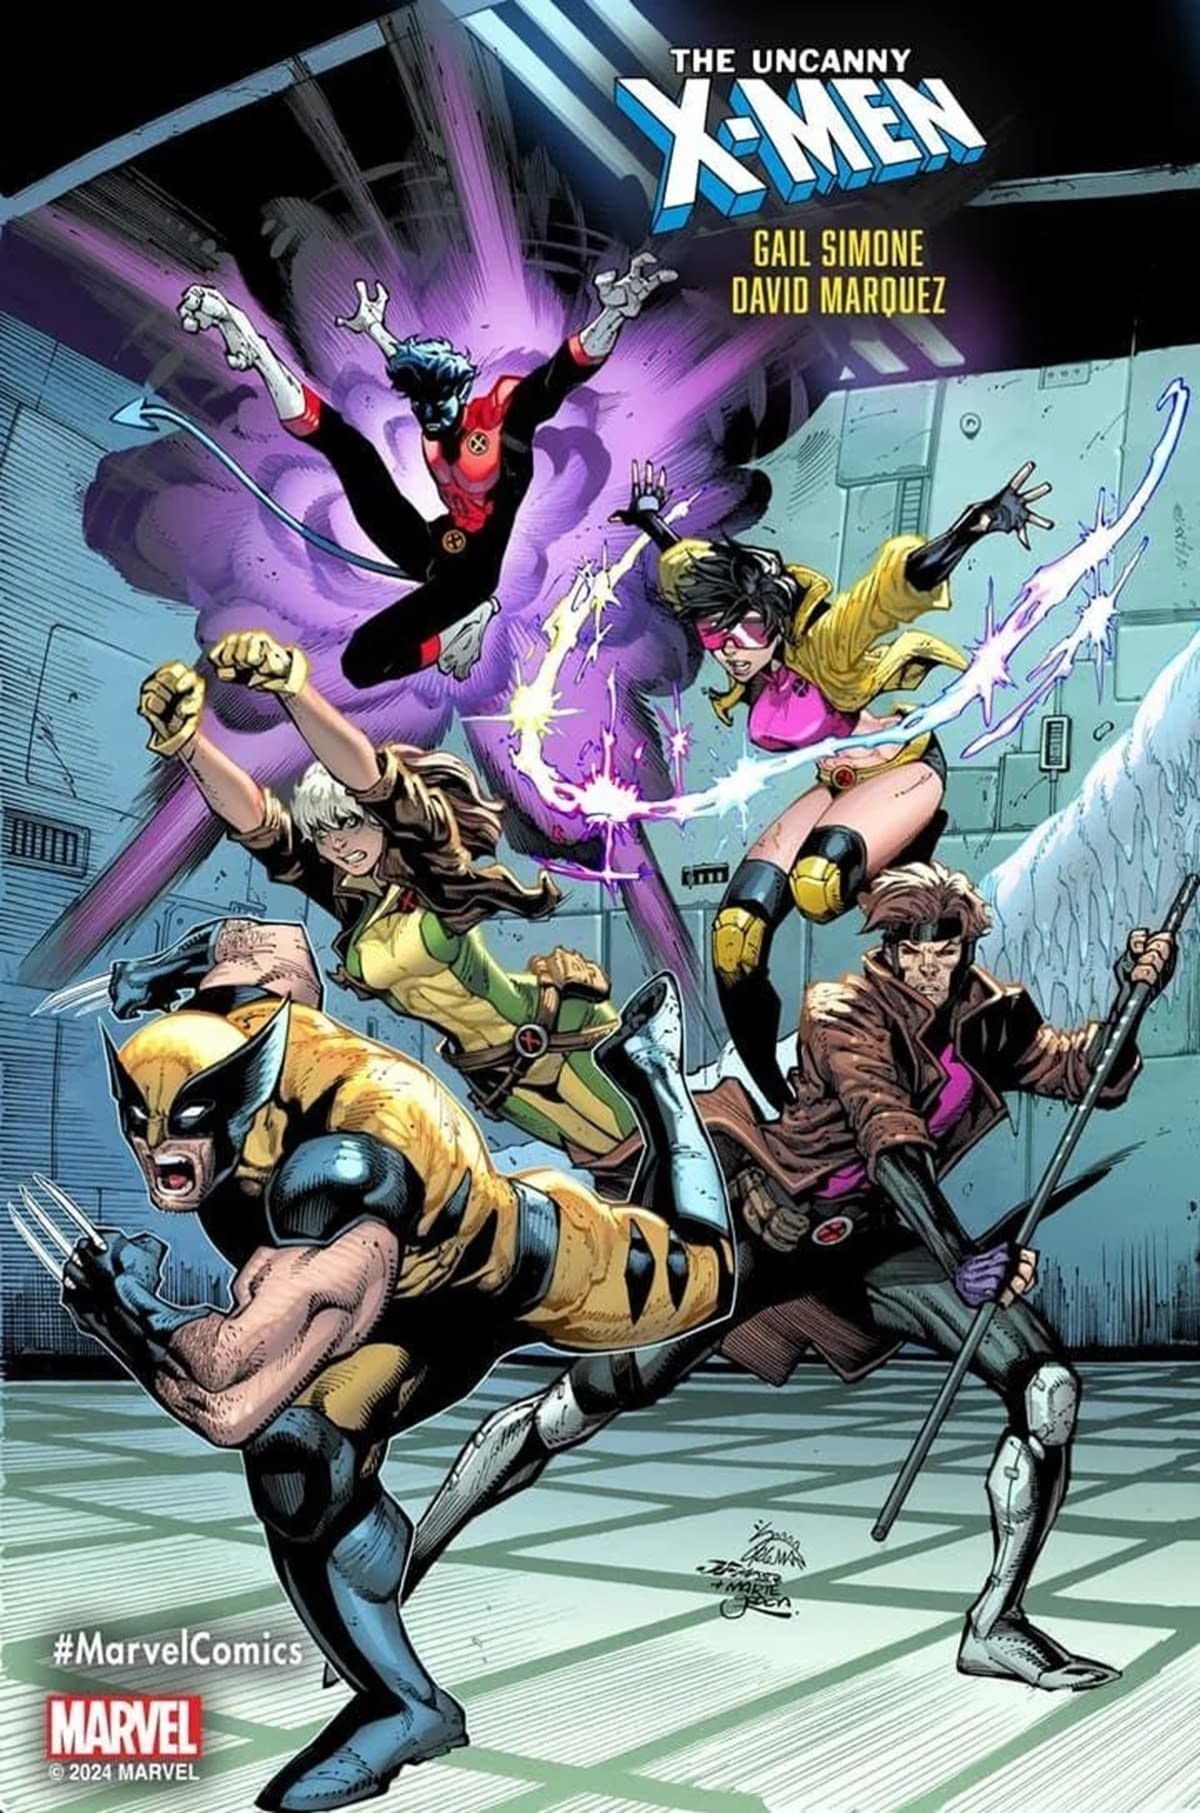 The cast of Uncanny X-Men